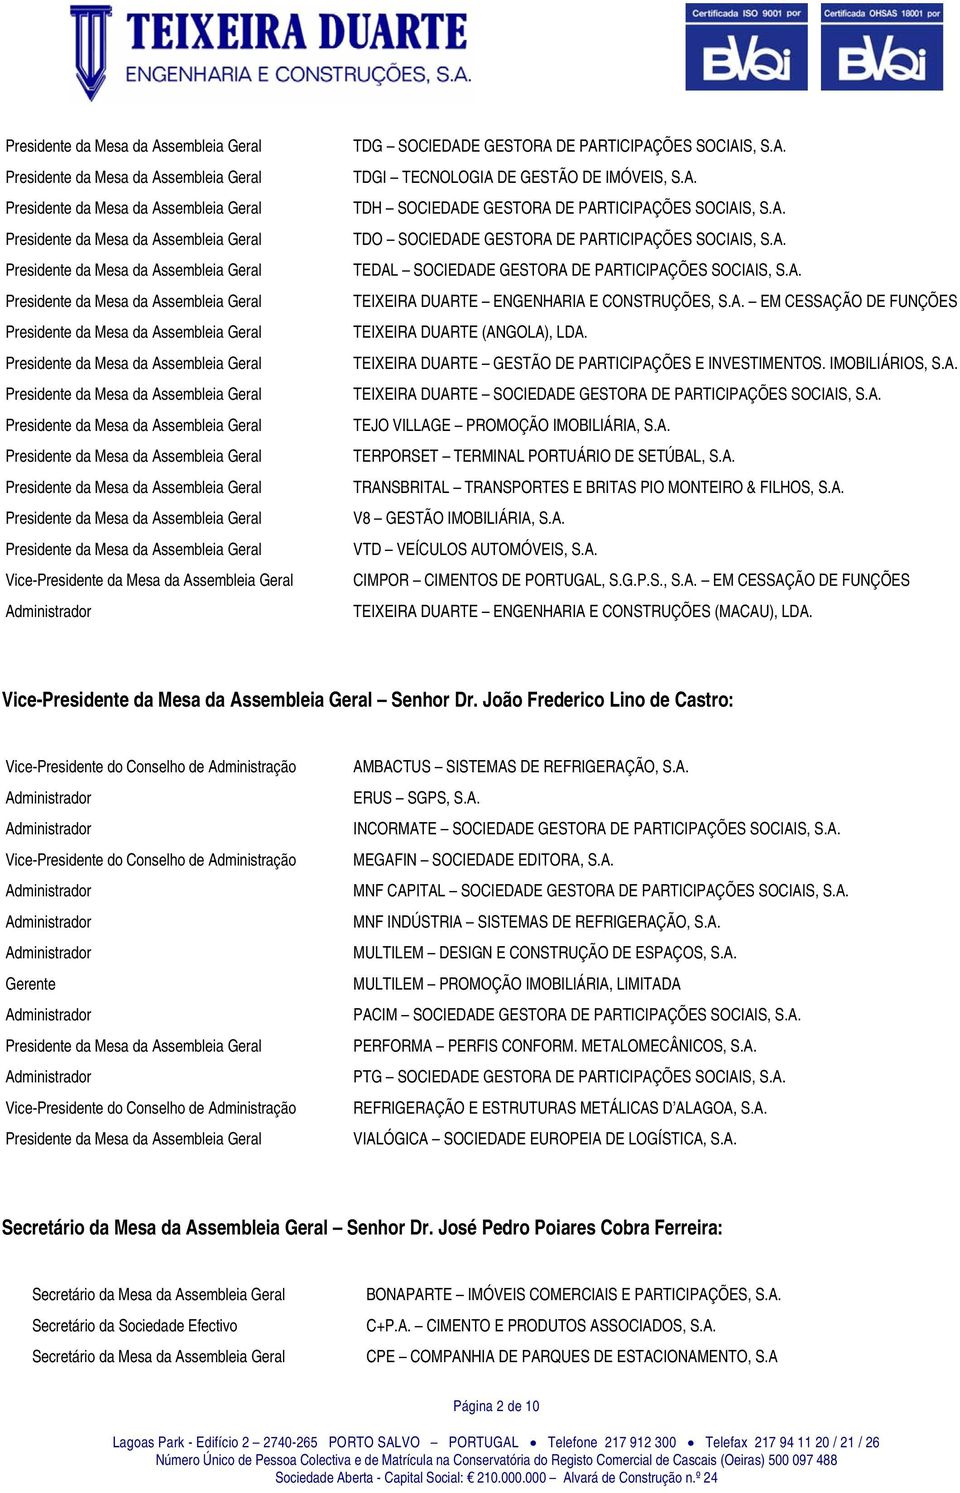 TEIXEIRA DUARTE GESTÃO DE PARTICIPAÇÕES E INVESTIMENTOS. IMOBILIÁRIOS, S.A. TEIXEIRA DUARTE SOCIEDADE GESTORA DE PARTICIPAÇÕES SOCIAIS, S.A. TEJO VILLAGE PROMOÇÃO IMOBILIÁRIA, S.A. TERPORSET TERMINAL PORTUÁRIO DE SETÚBAL, S.